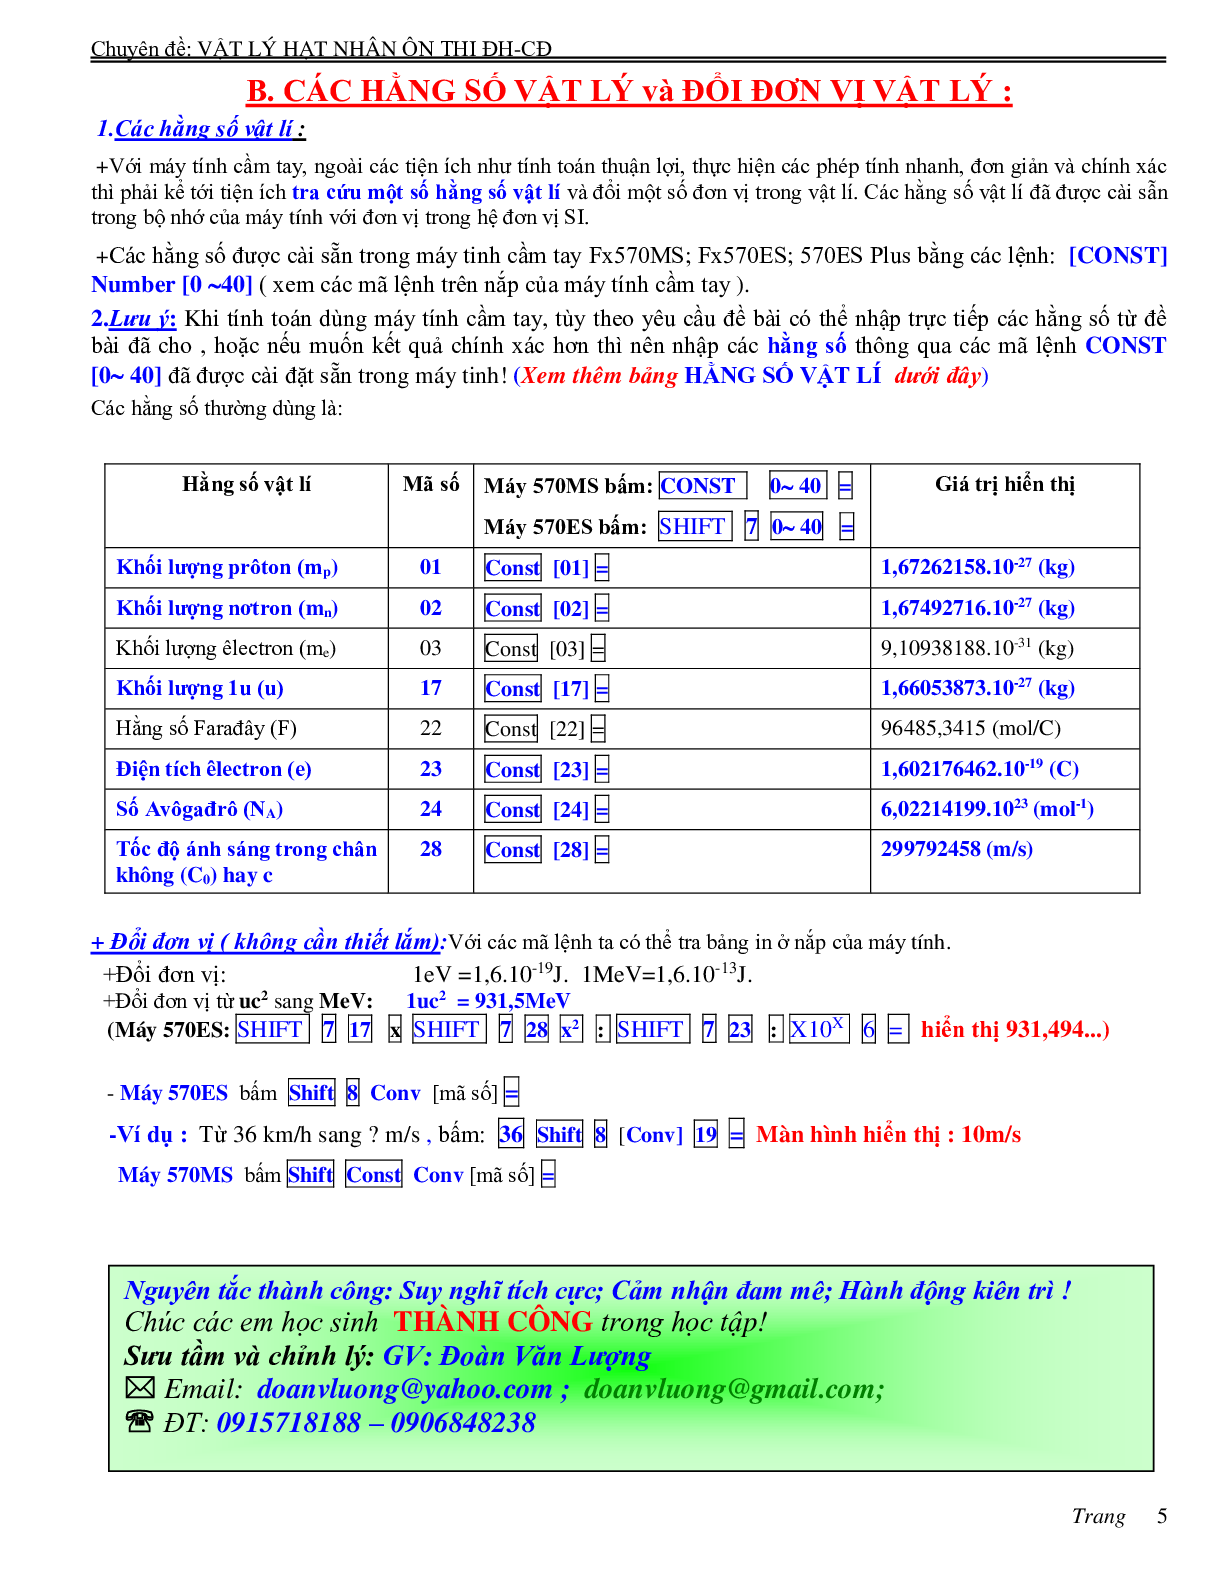 Chuyên đề Hạt nhân nguyên tử môn Vật lý lớp 12 (trang 5)